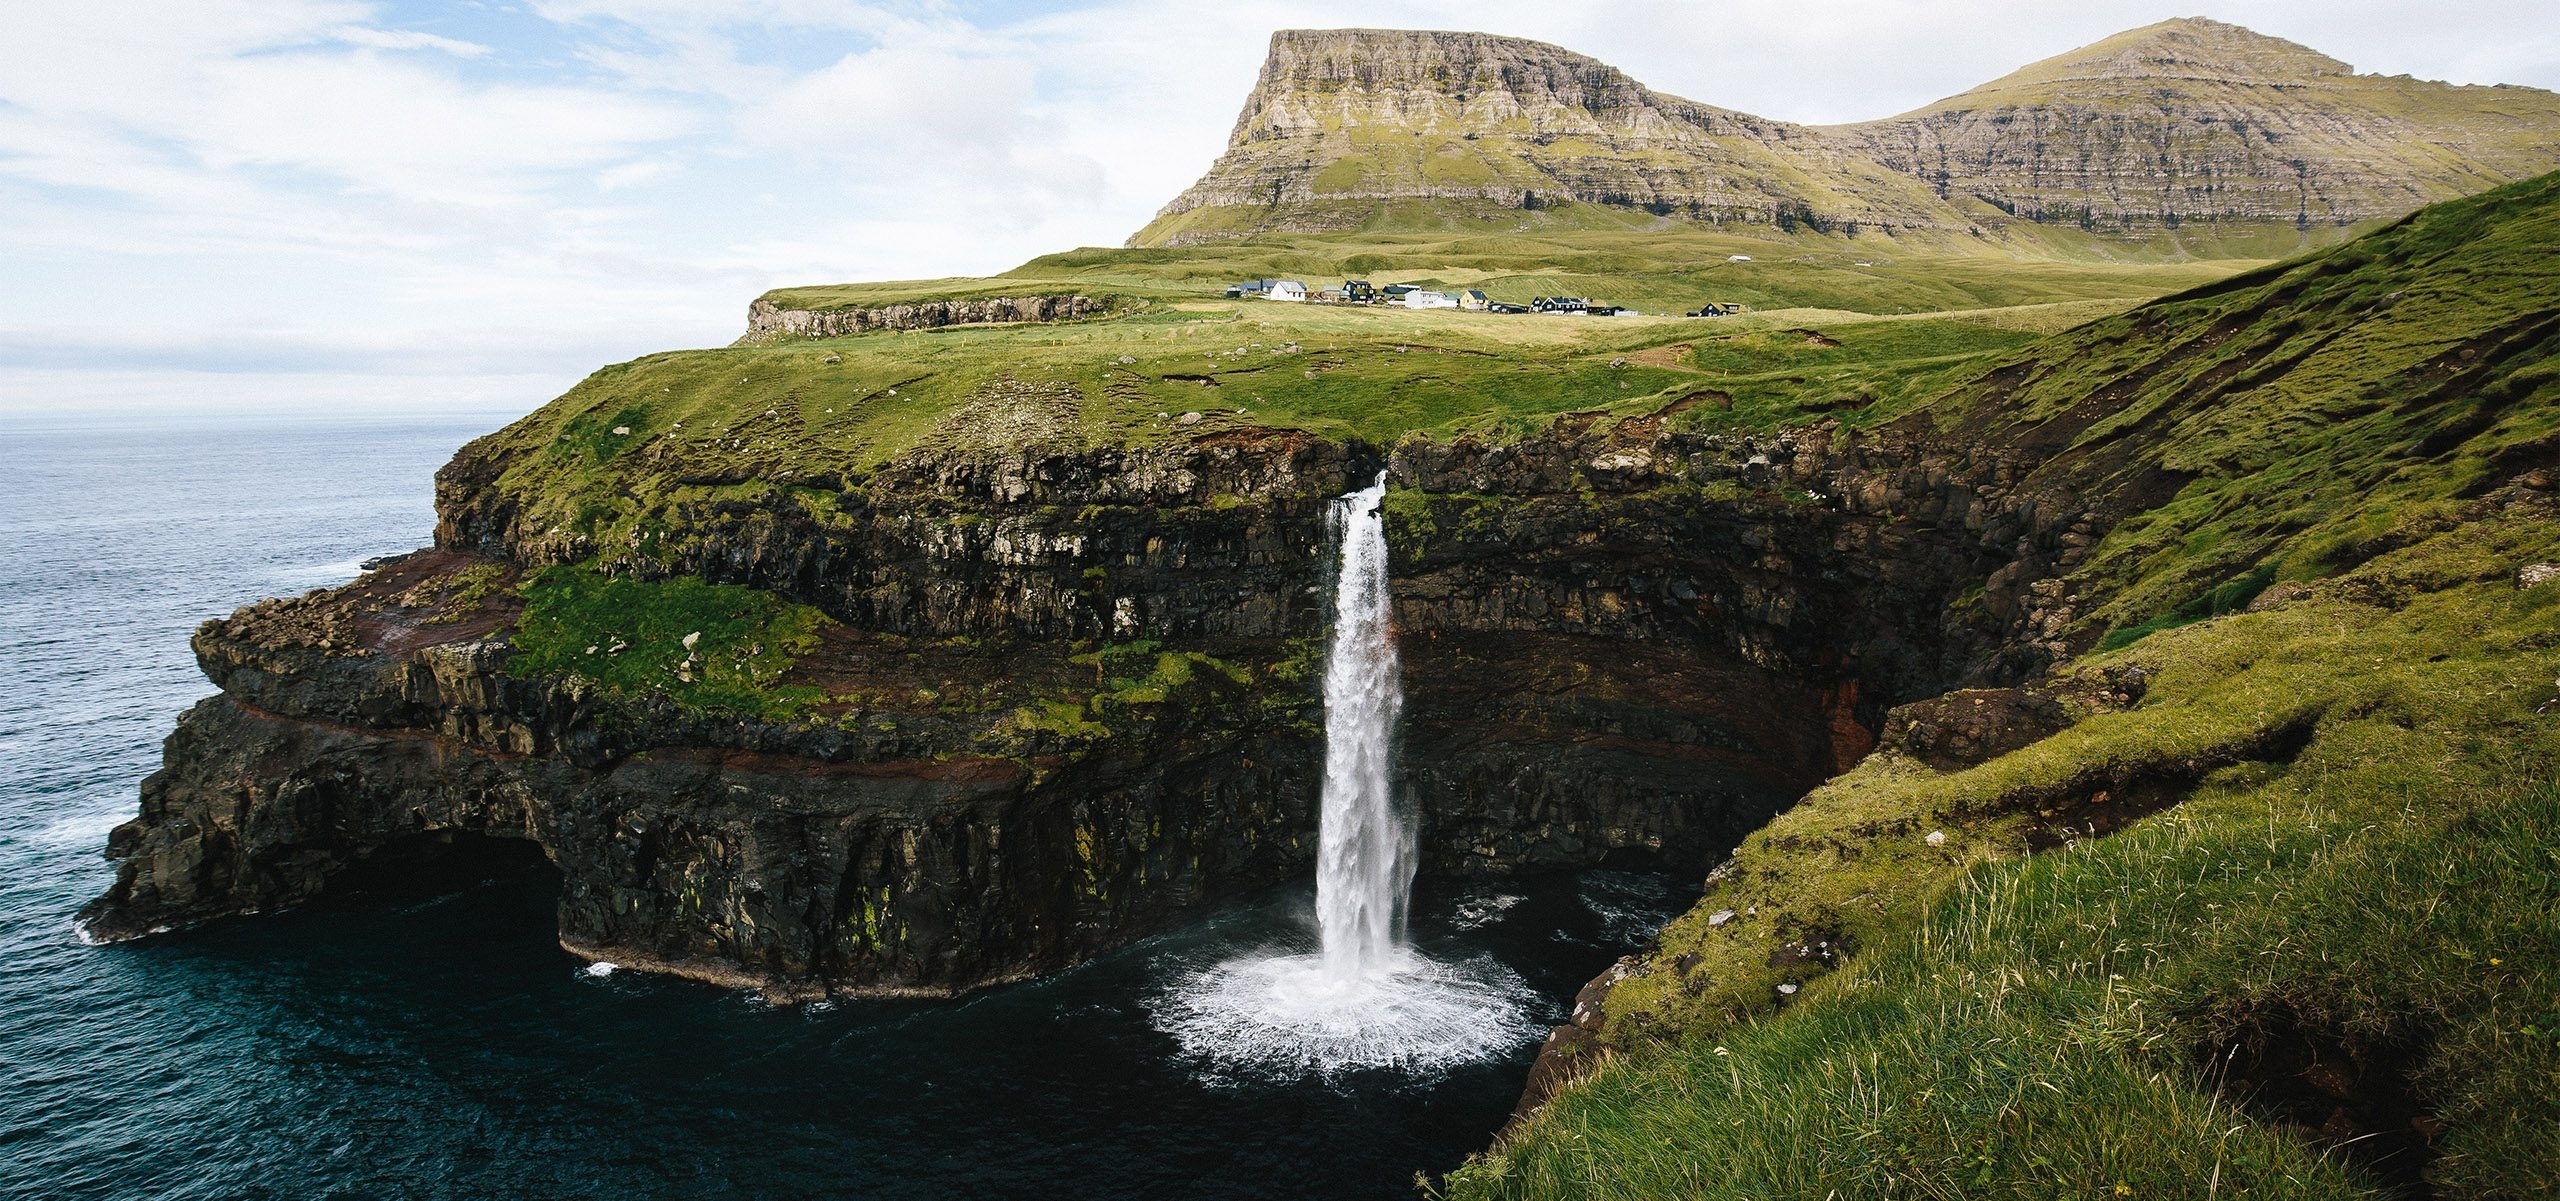 Amala destinations, Exploring Faroe Islands, Cultural immersion, Nature's wonders, 2560x1210 Dual Screen Desktop